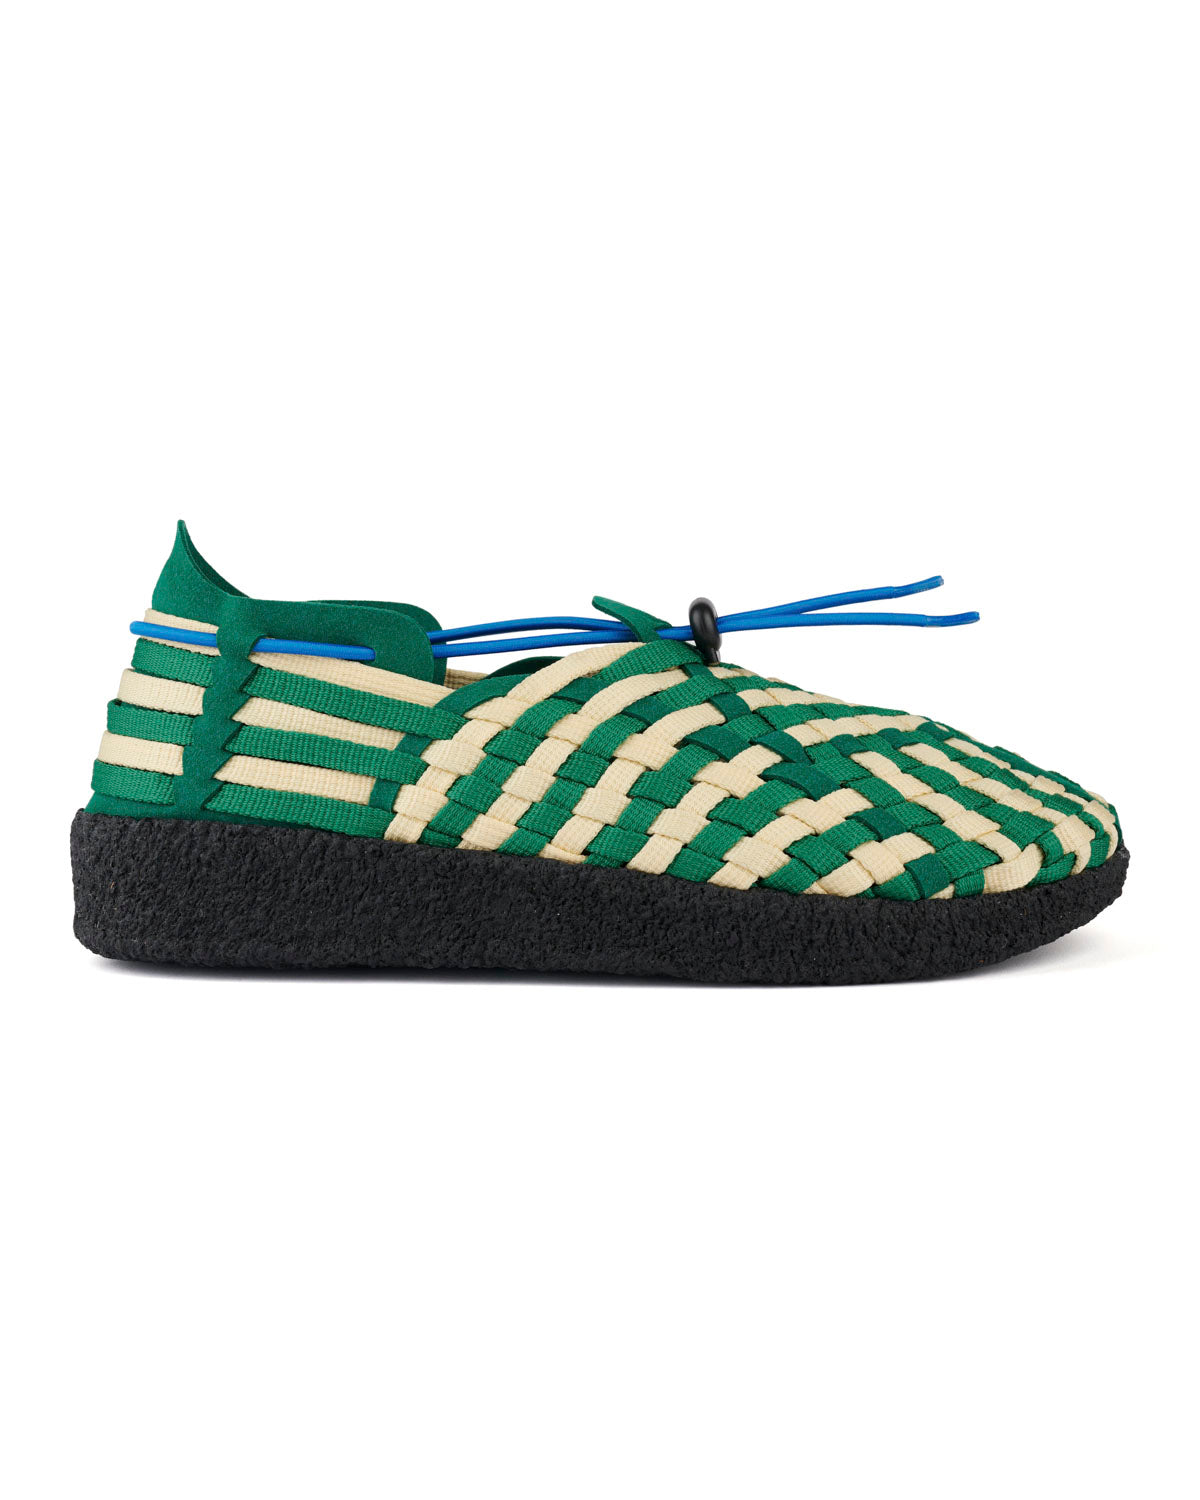 Men's Malibu Latigo Woven Shoe - Green/Natural/Black 1